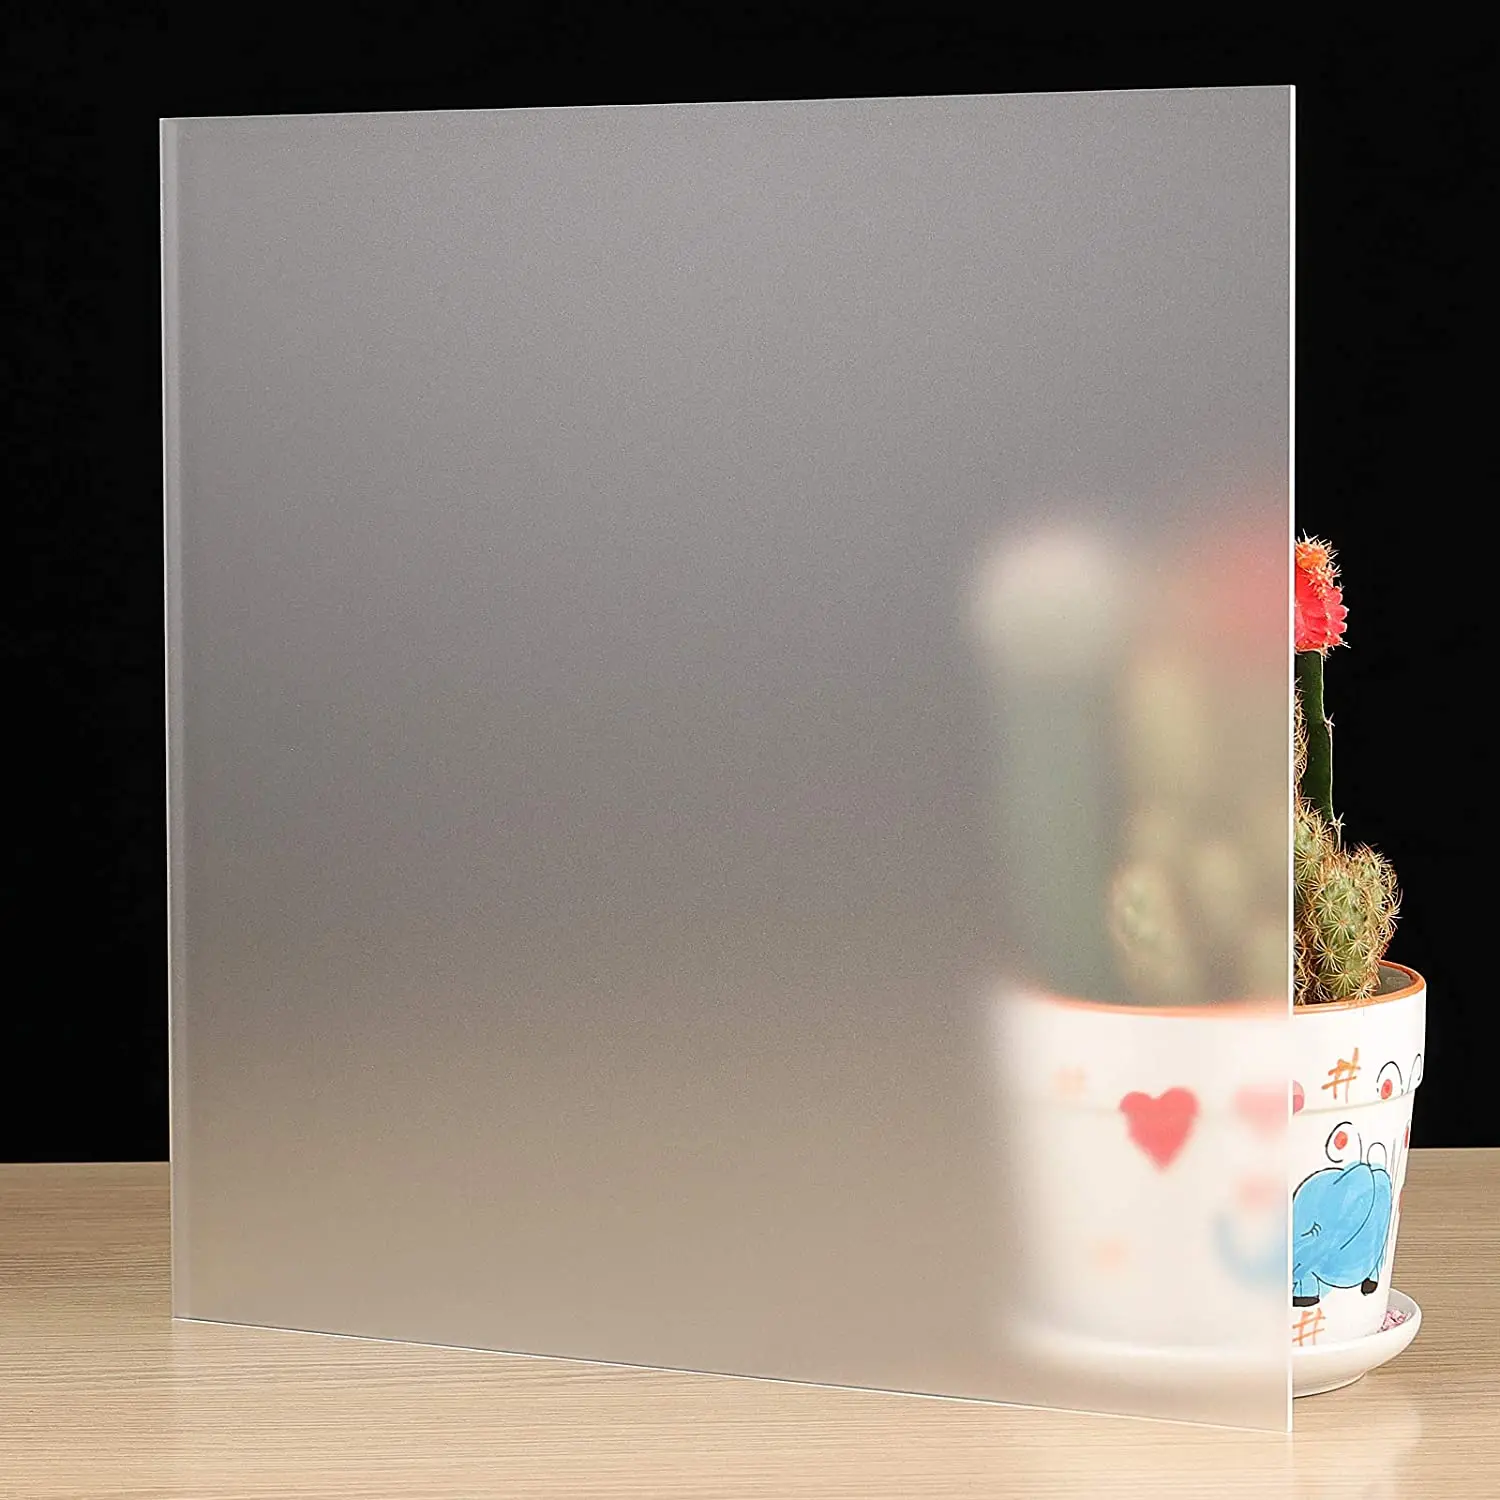 Feuille acrylique transparente coulée de 0,3 cm d'épaisseur, feuille de  plexiglas rigide pour travaux manuels, feuilles de verre  plexiglas/plexiglas hautement transparentes pour panneaux d'affichage,  panneaux de 20,3 x 25,4 cm (5, 20,3